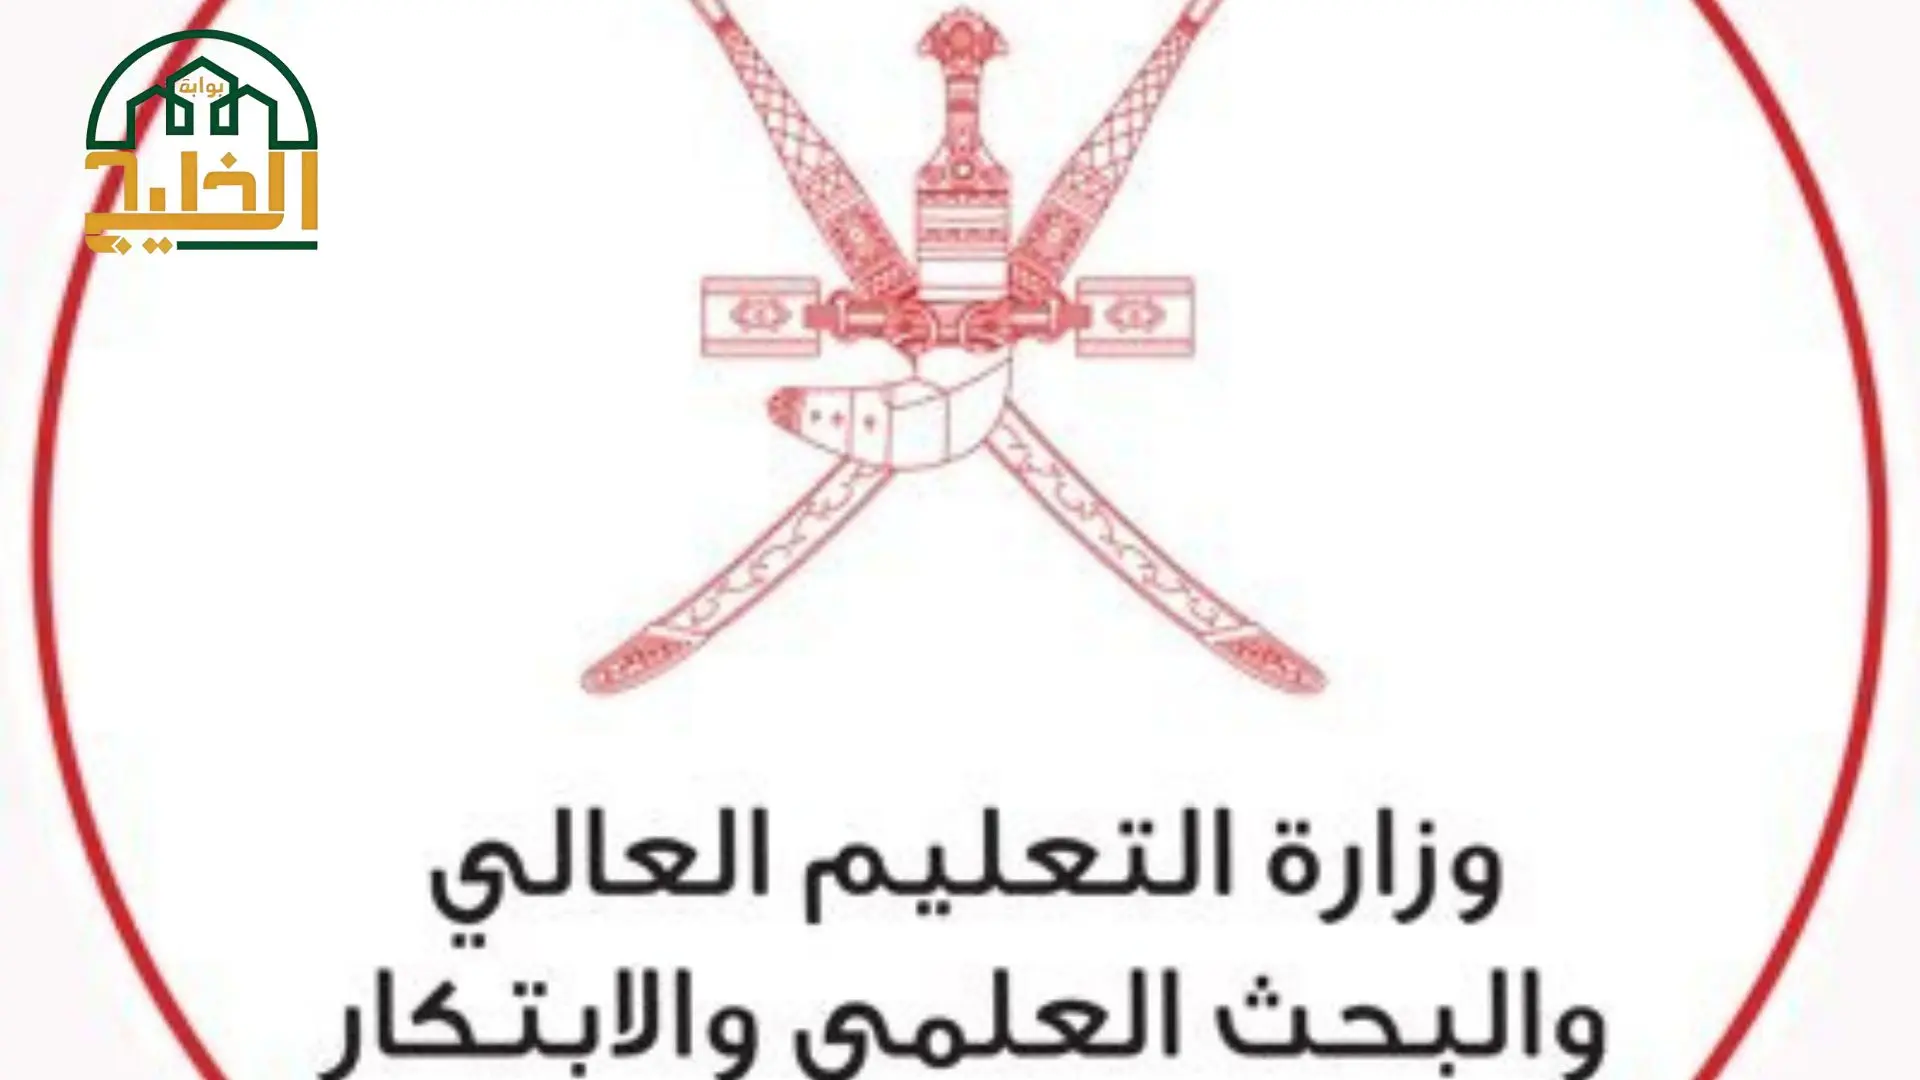 رقم وزاره التعليم العالي في سلطنة عمان